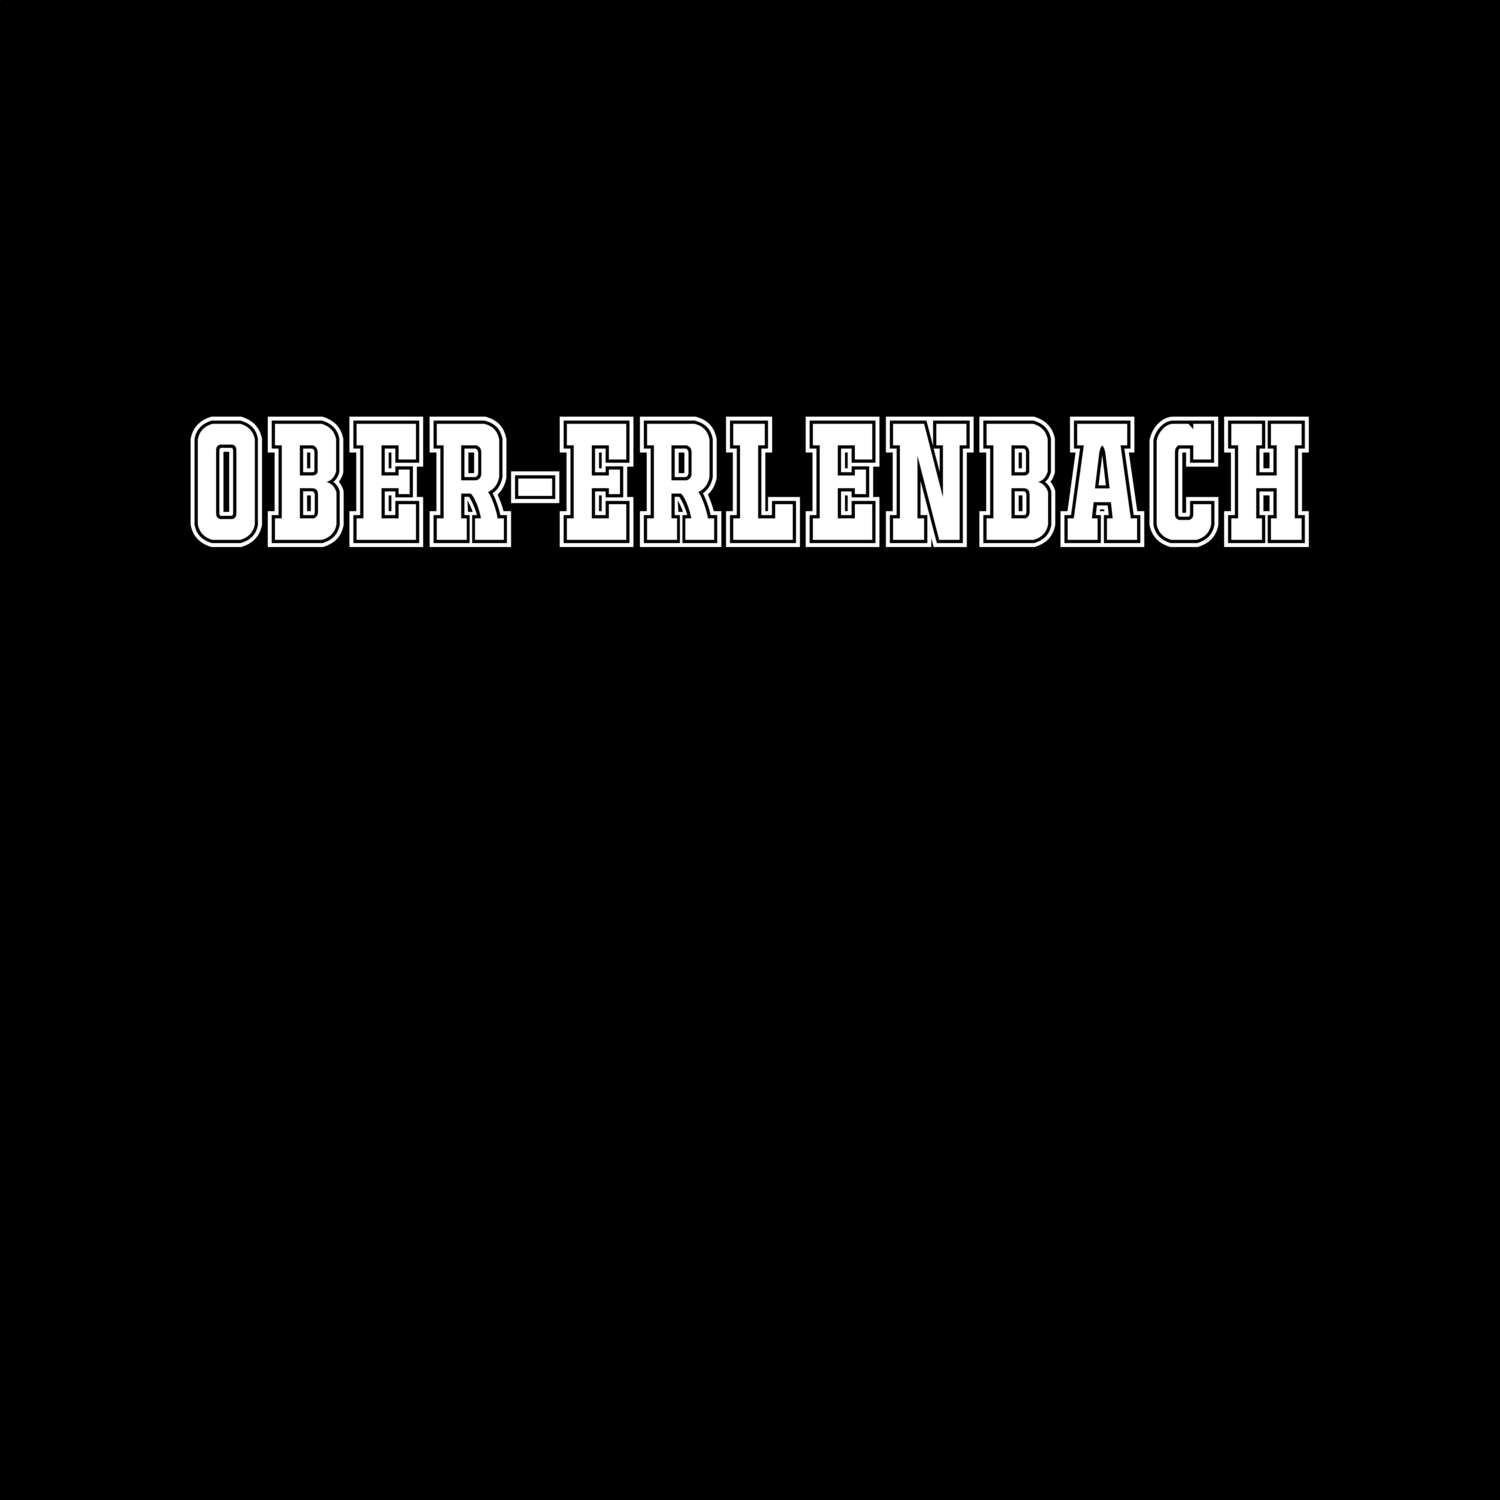 Ober-Erlenbach T-Shirt »Classic«